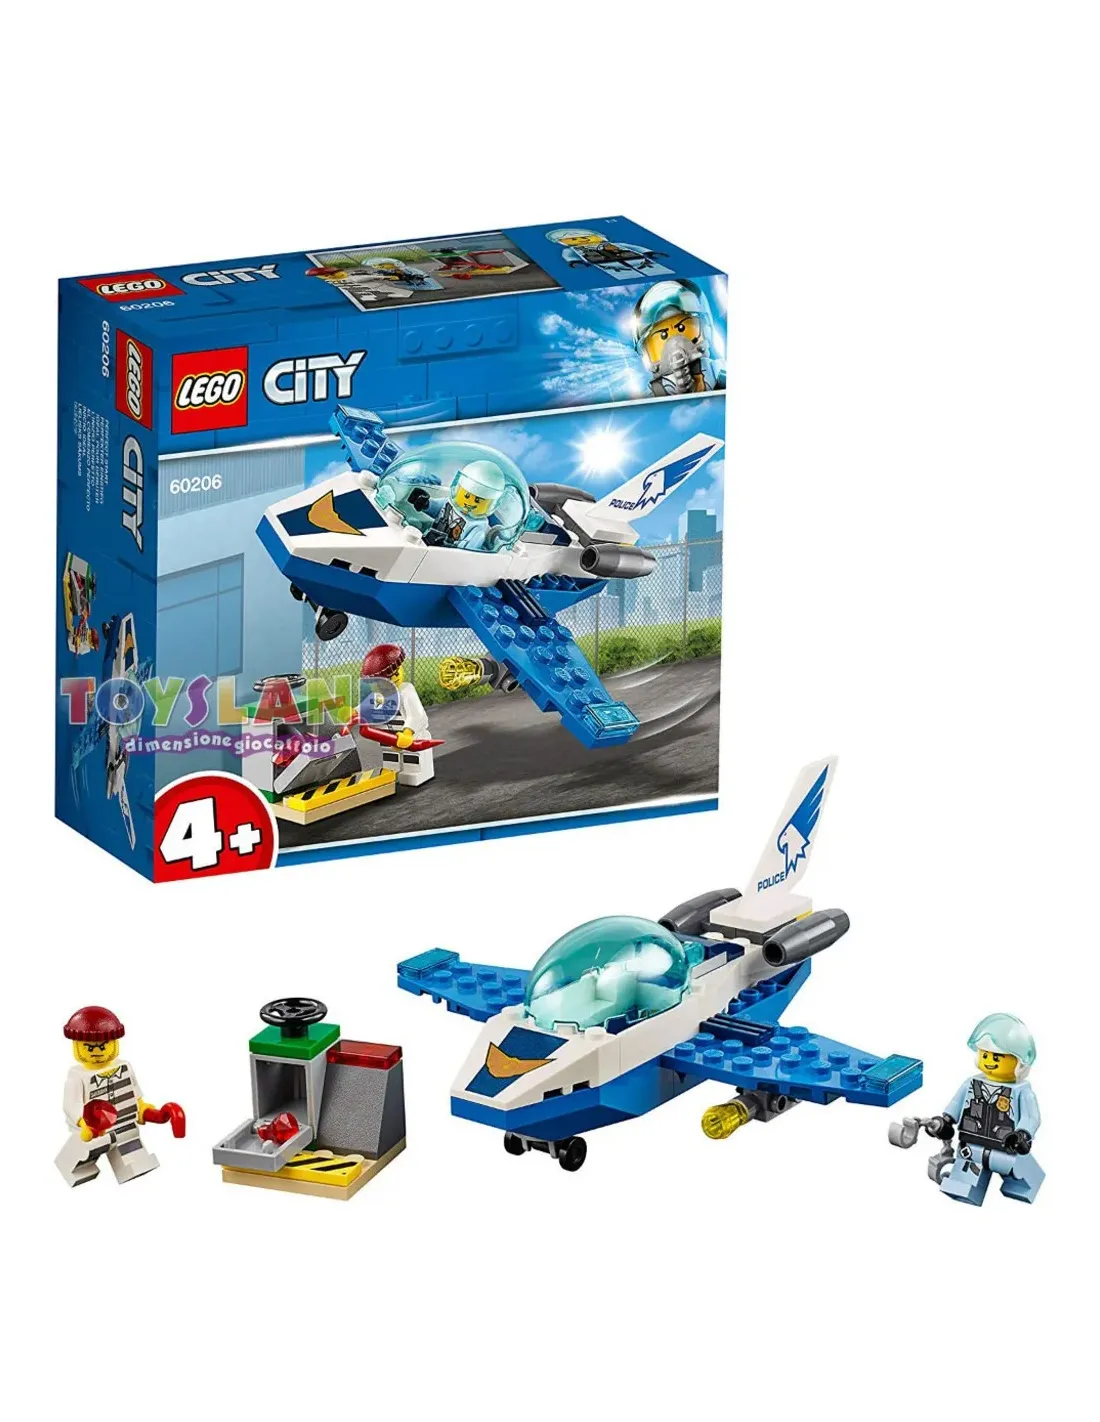 LEGO City Pattugliamento Polizia Aerea 60206, un set 4+ perfetto per  iniziare a costruire con i set LEGO City